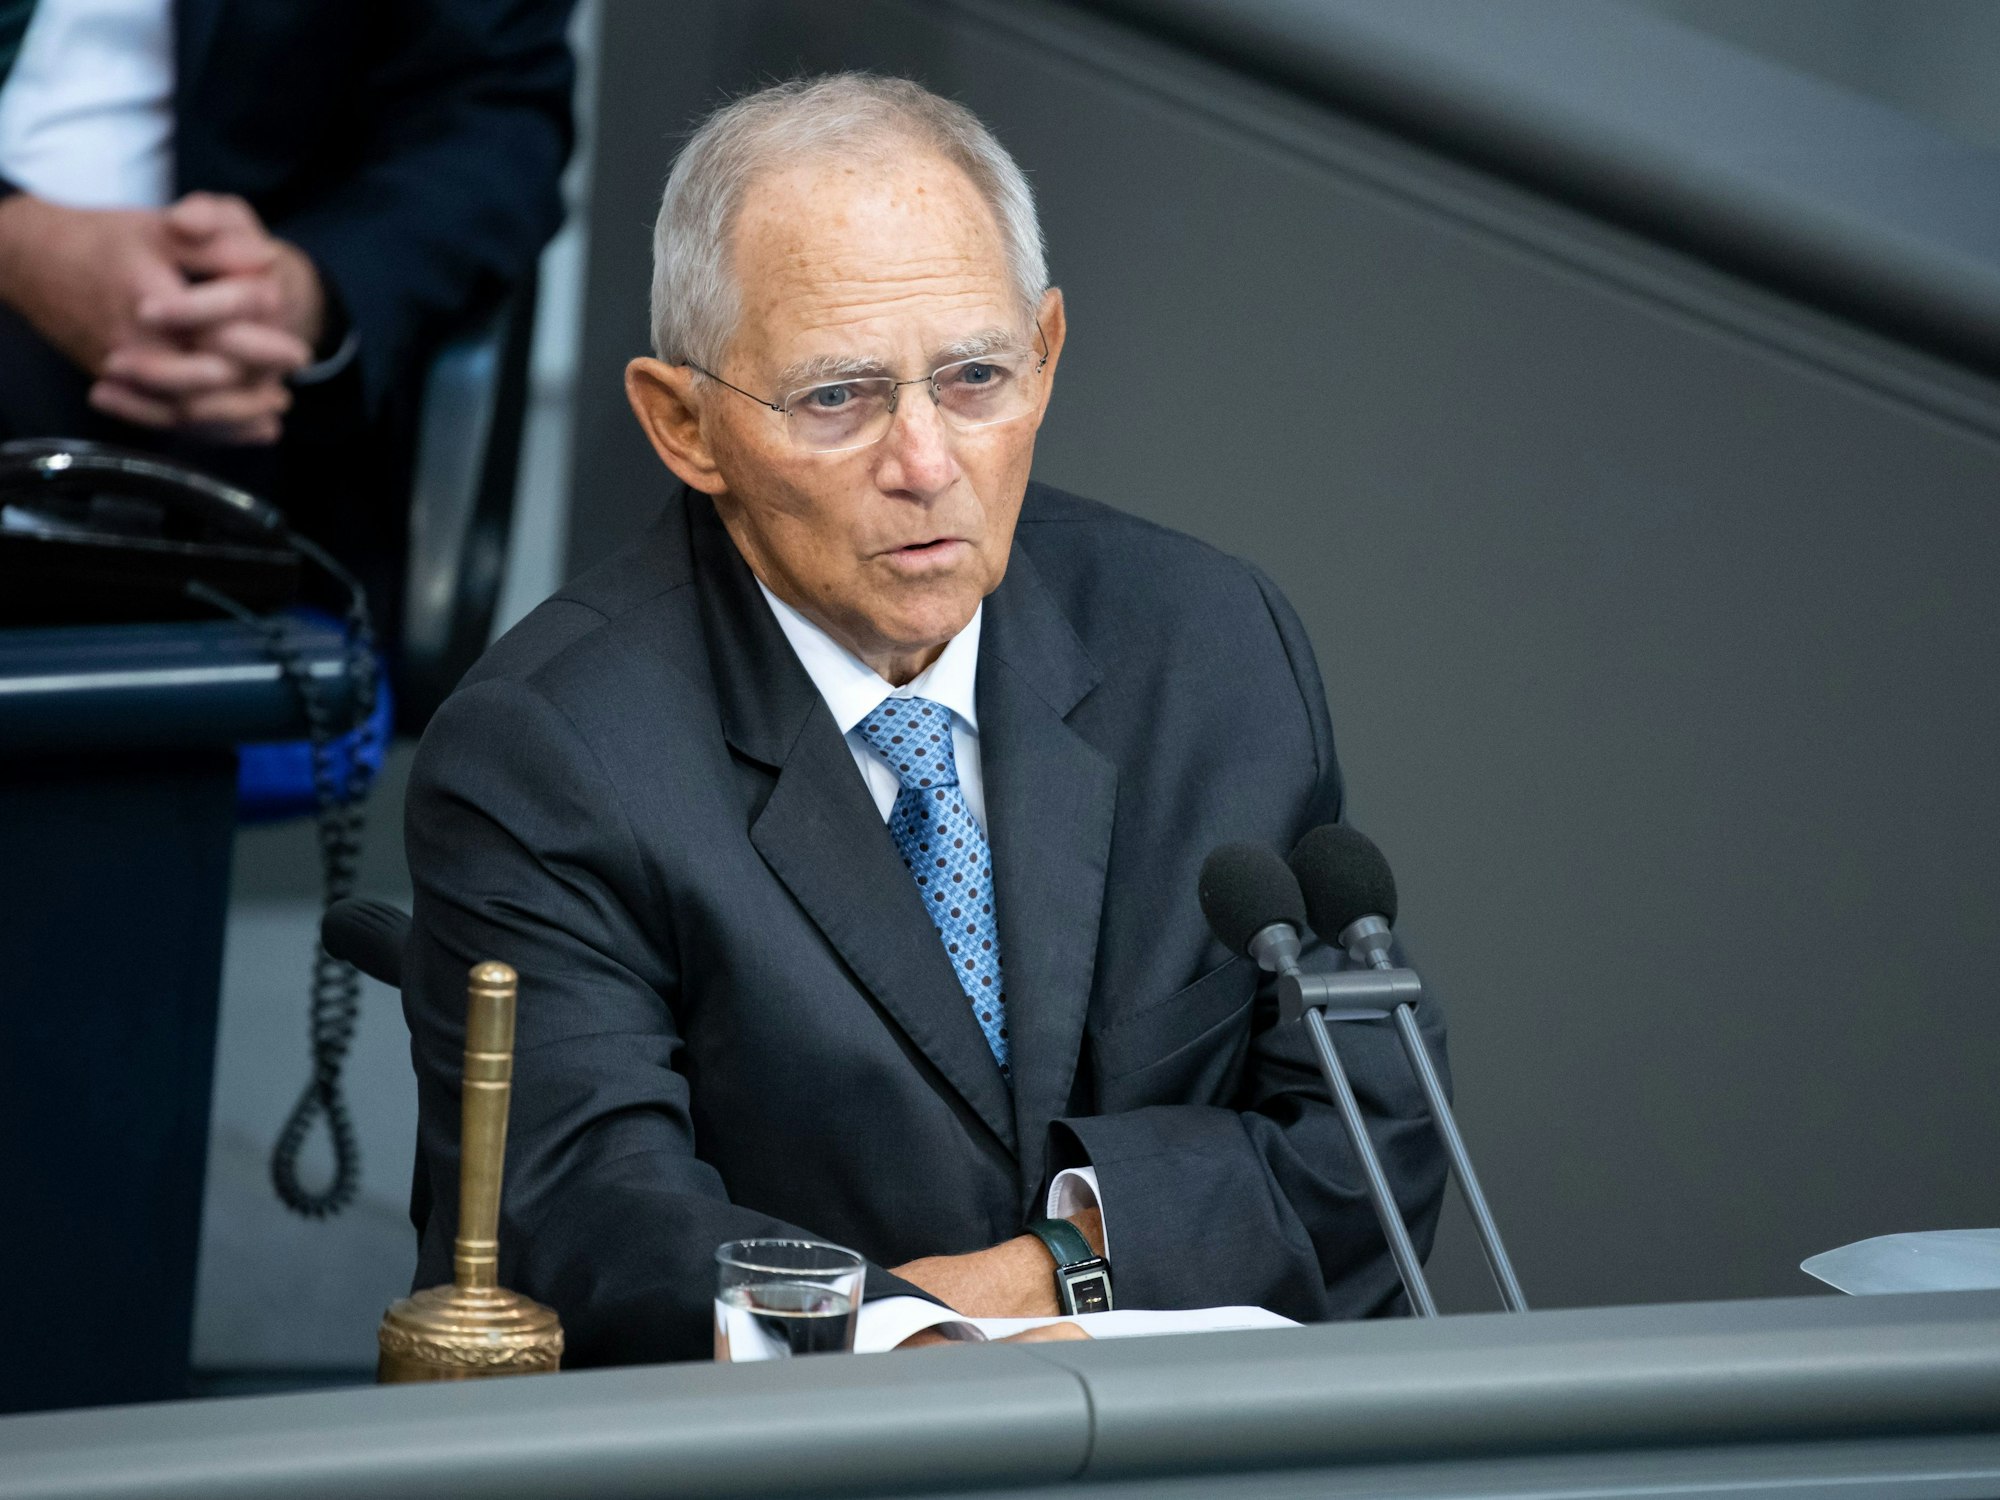 Der damalige Bundestagspräsident Wolfgang Schäuble (CDU) eröffnet die Plenarsitzung im Deutschen Bundestag mit einem Gedenken an den im Juli 2020 verstorbenen SPD-Politiker Hans-Jochen Vogel, hier im September 2020.